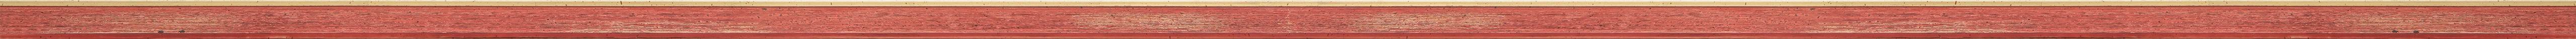 CONTEMPORARY HANDMADE RED FRAME frame